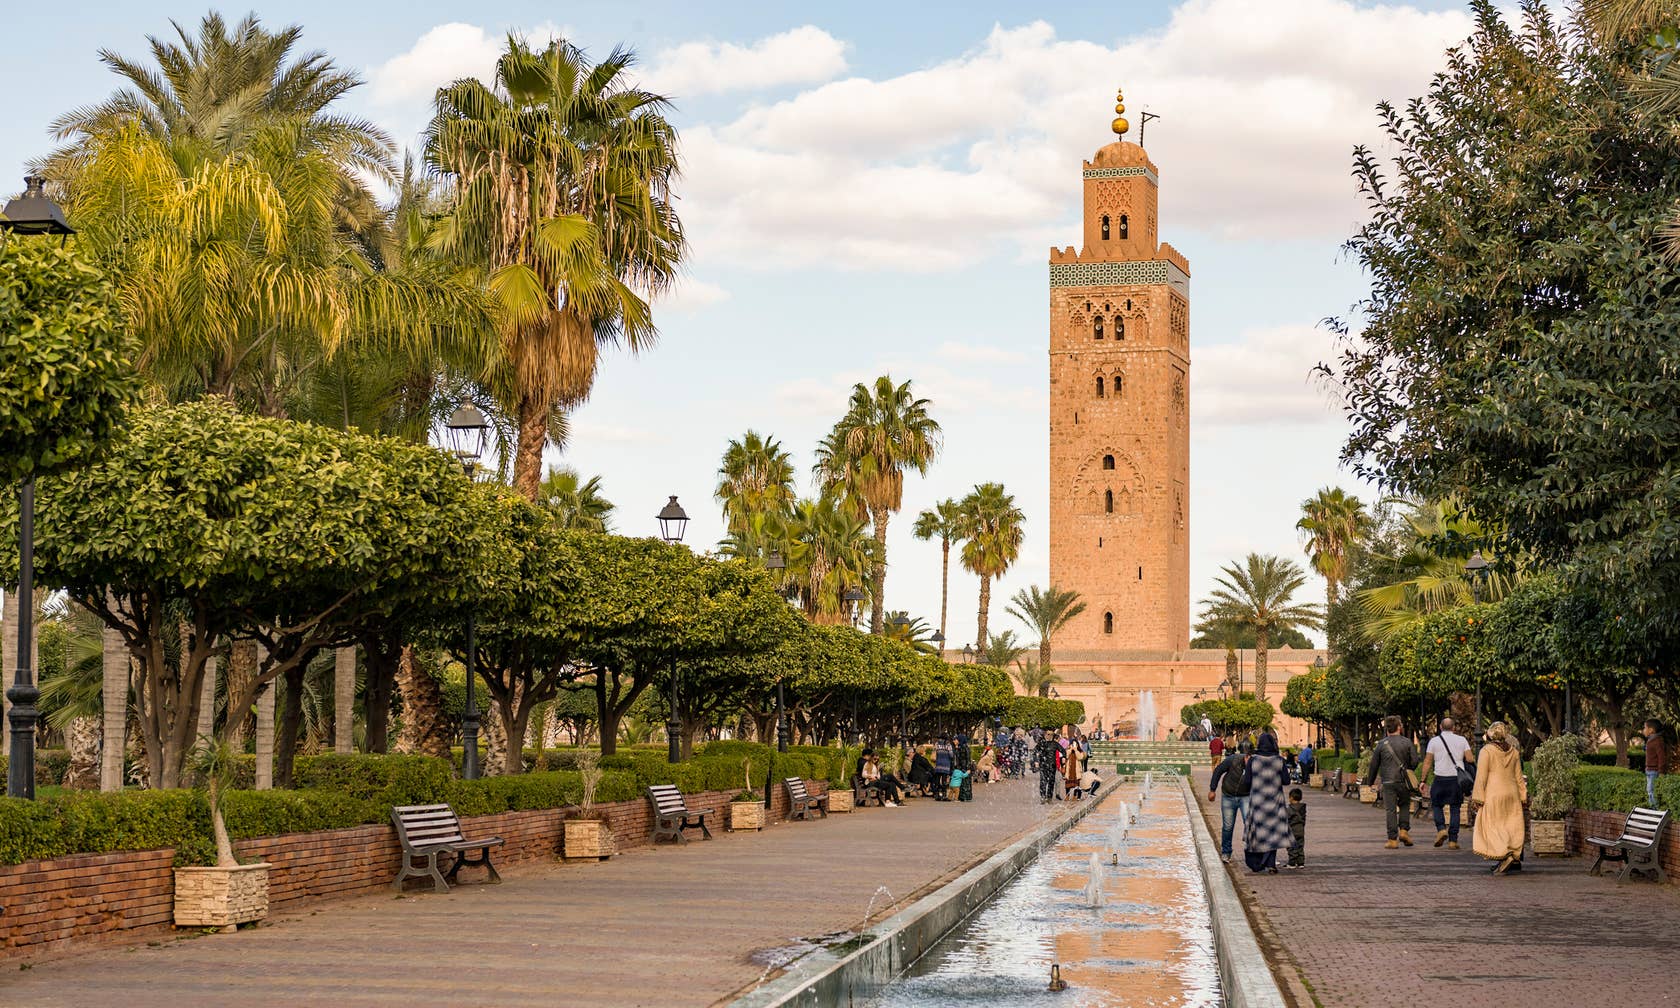 Affitti per le vacanze a Marocco